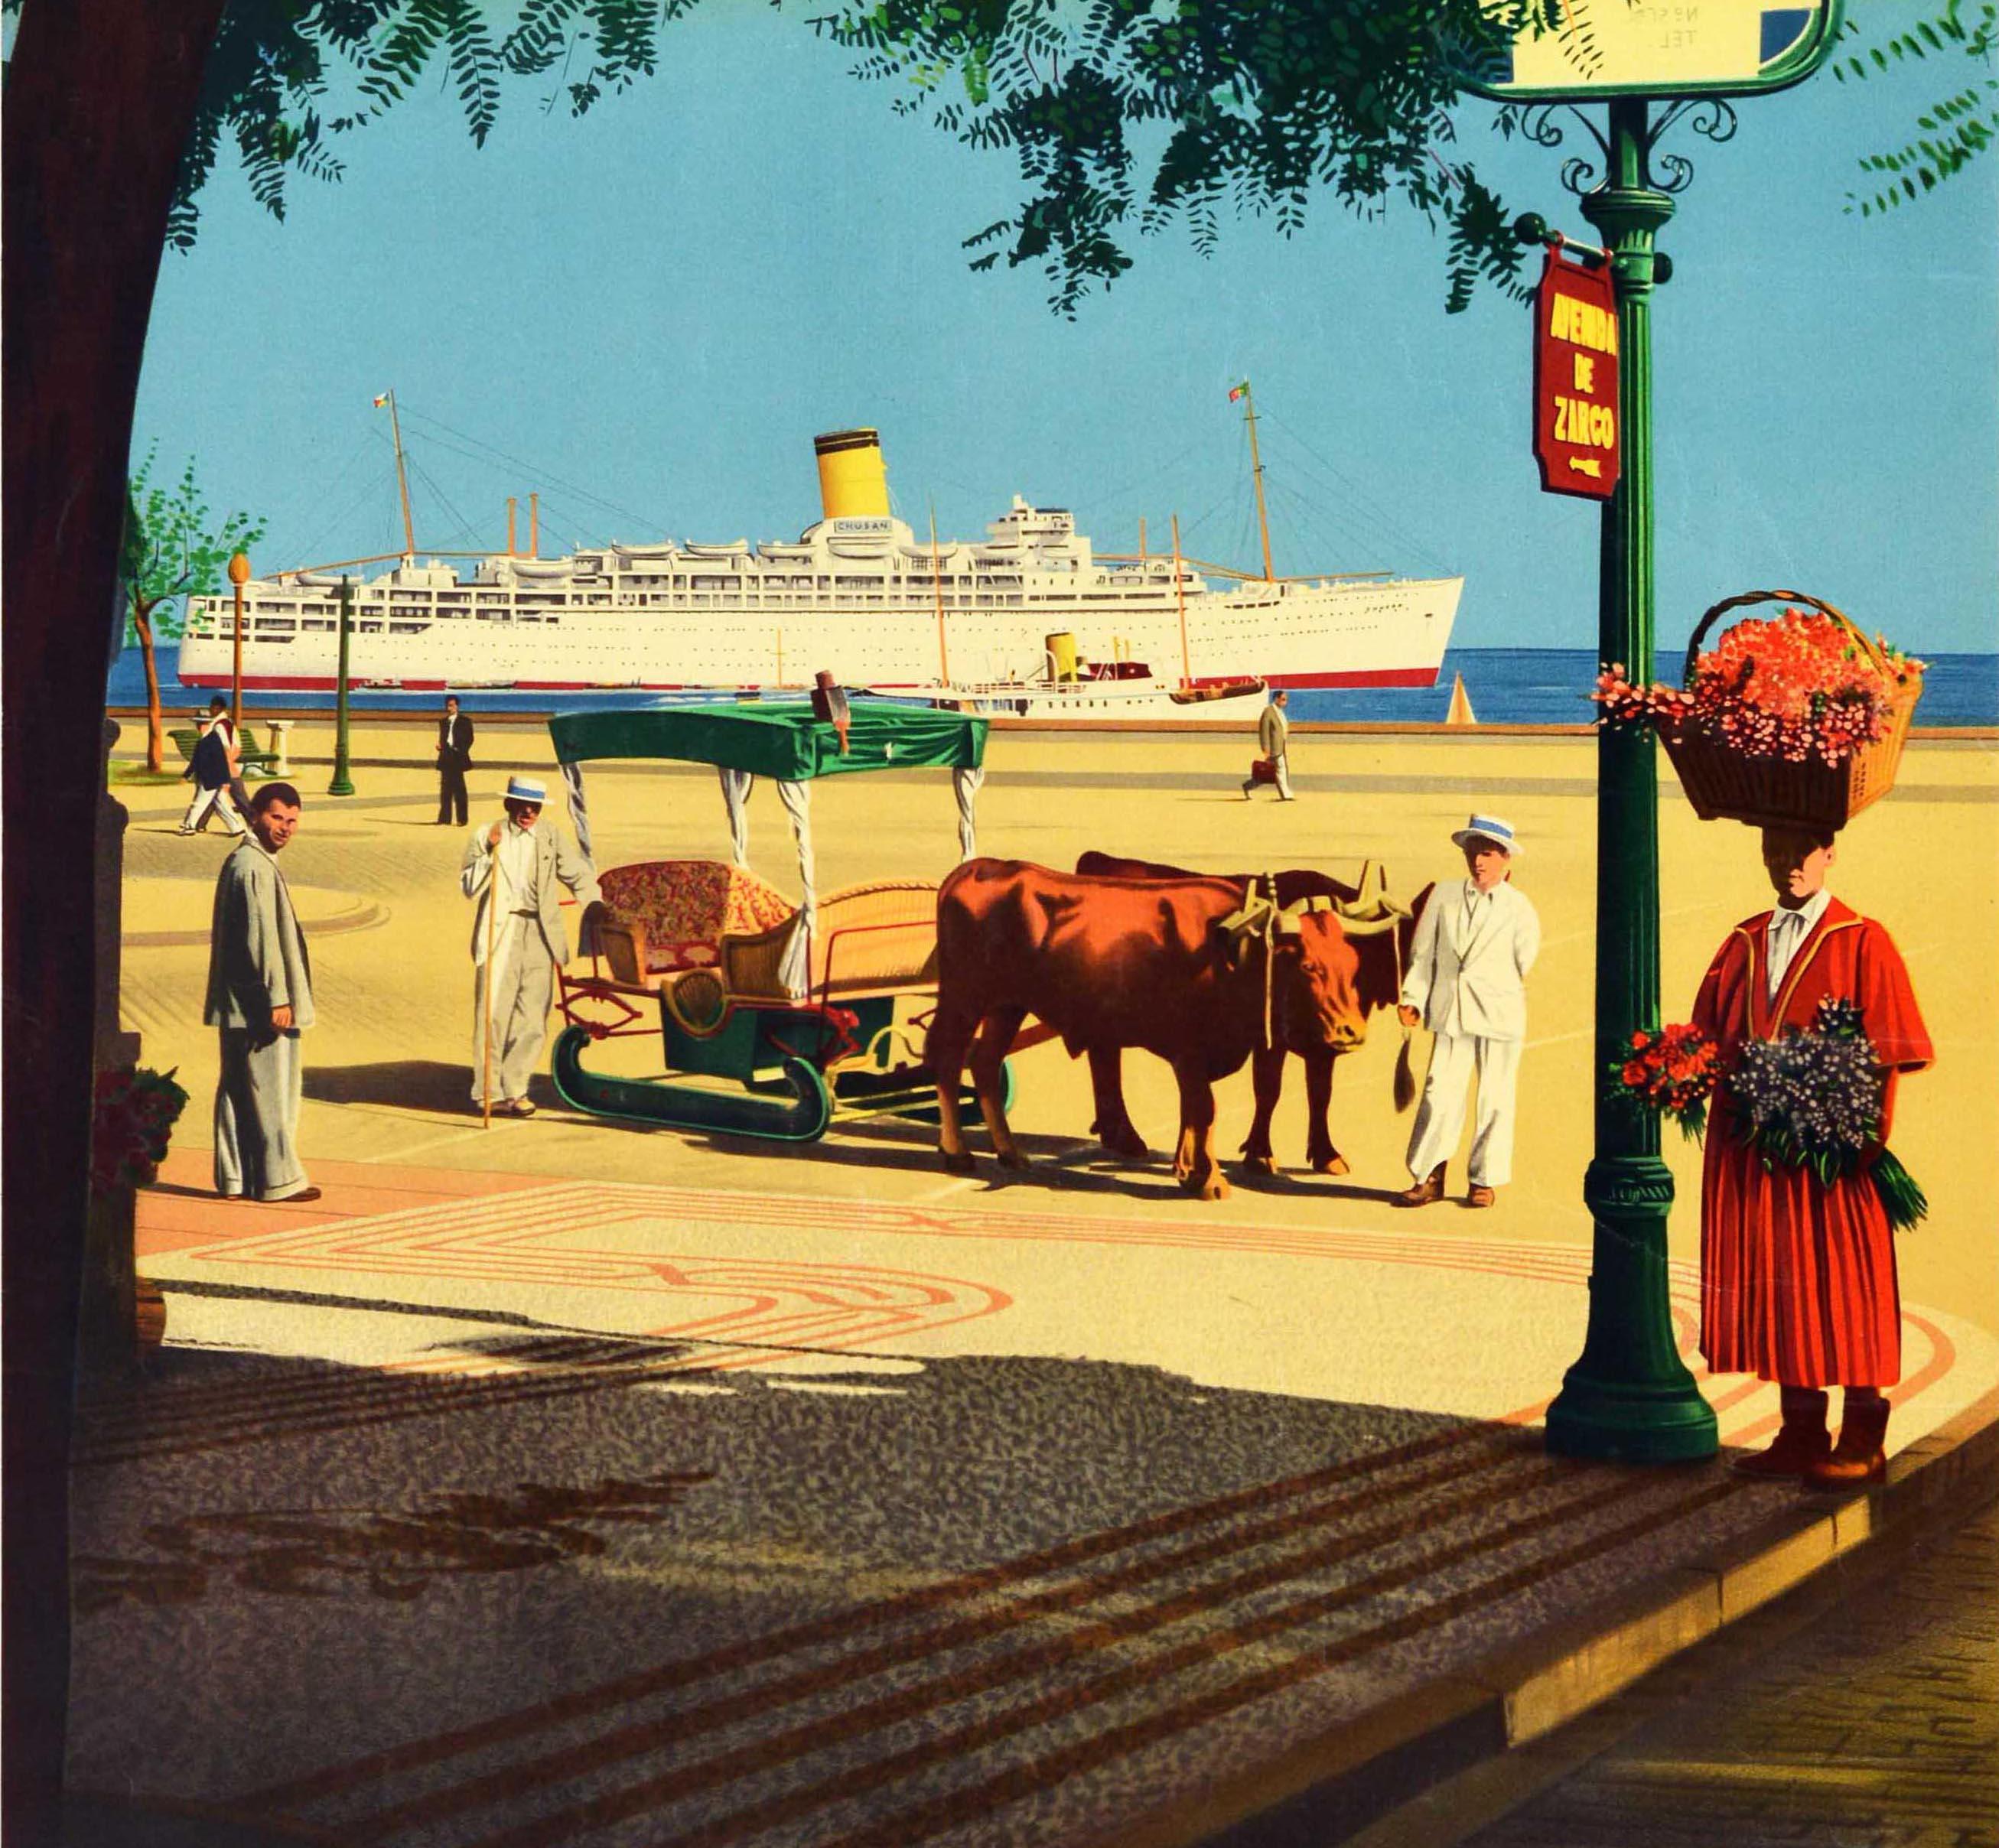 Affiche de voyage vintage originale pour P&O Cruises présentant une vue colorée vers un paquebot avec un navire plus petit et un voilier visible au bout d'une promenade avec des personnes regardant vers le spectateur, y compris deux personnes en